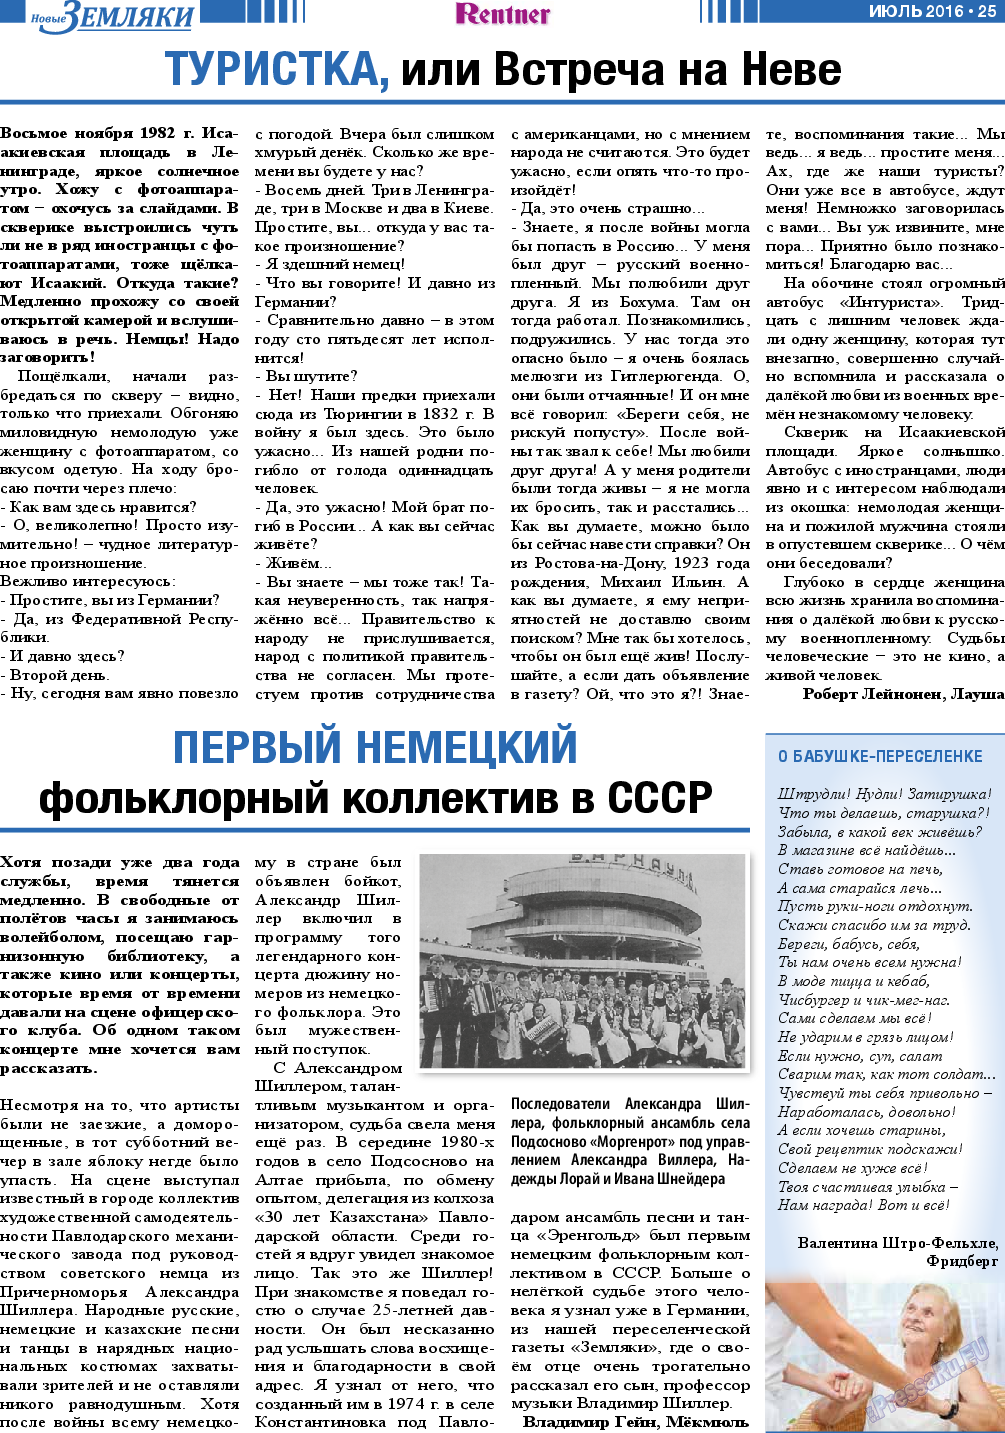 Новые Земляки, газета. 2016 №7 стр.25